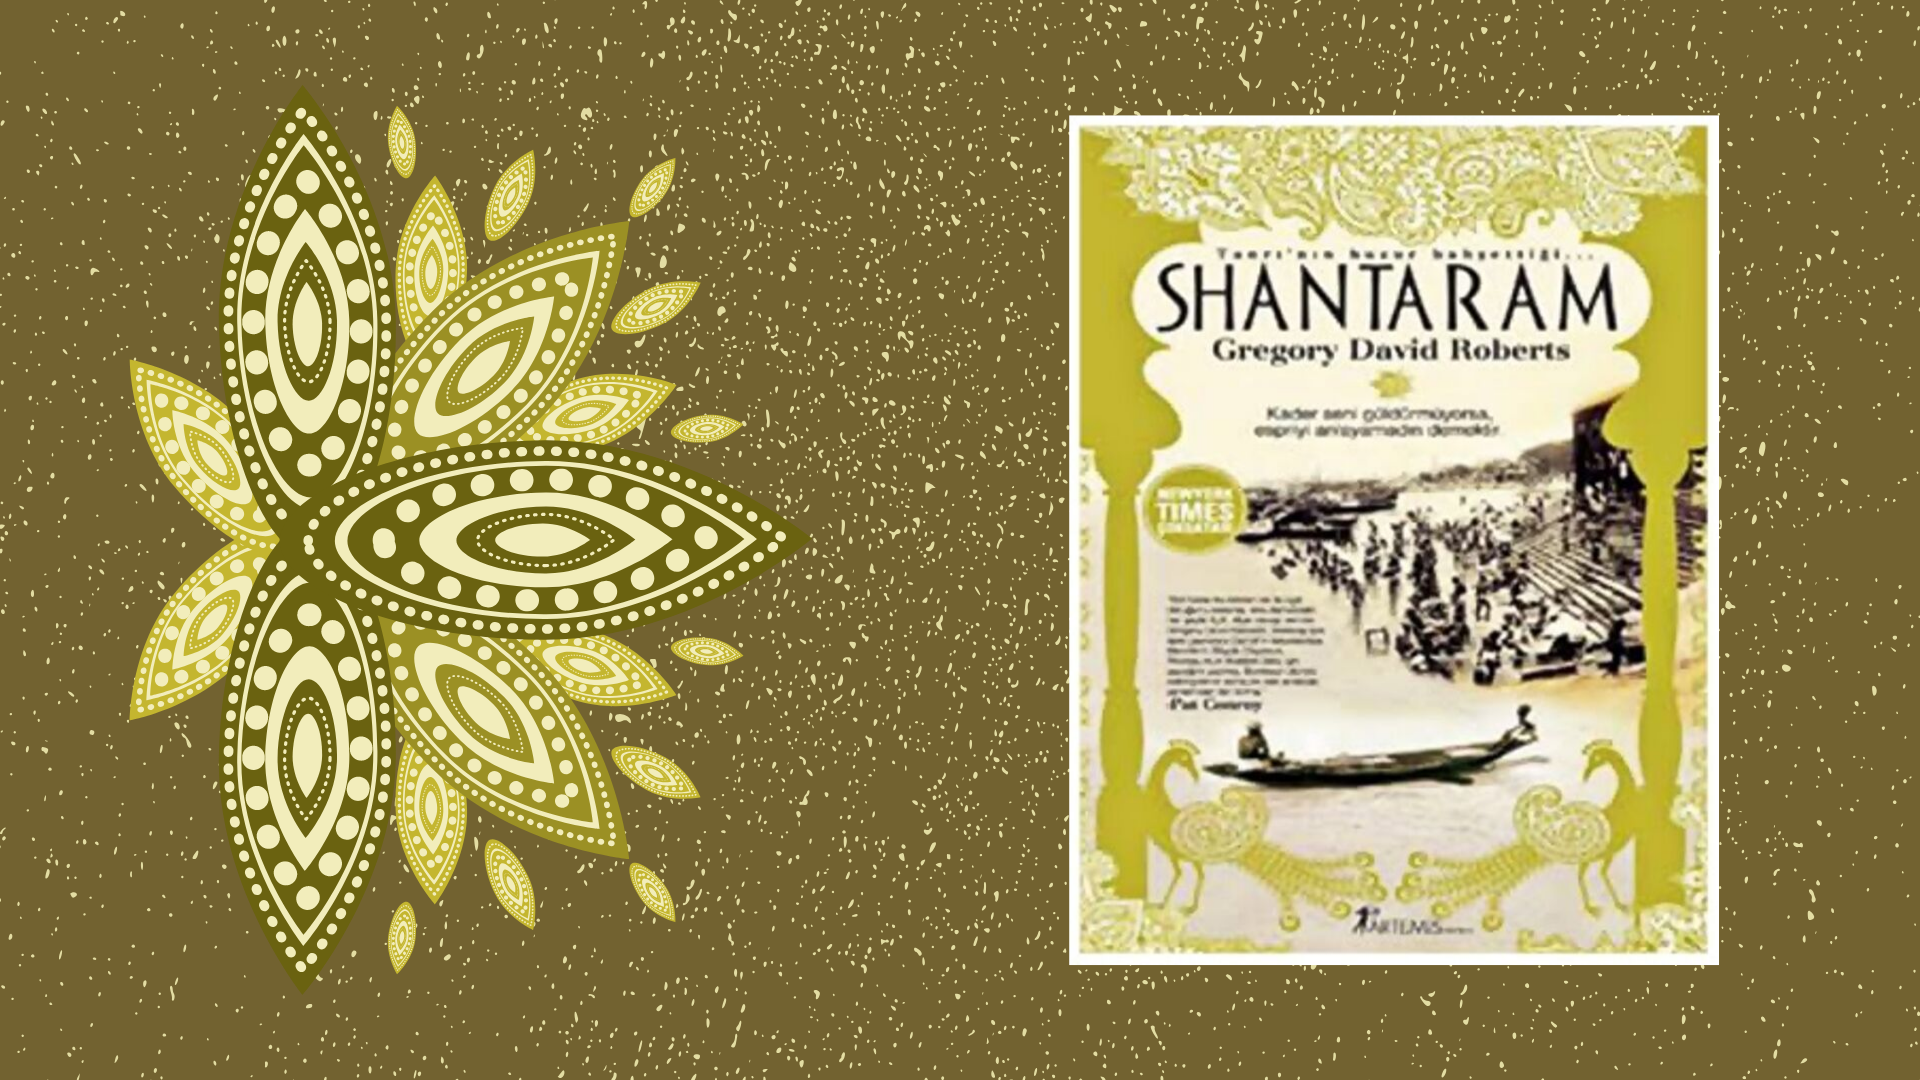 Kitap: Shantaram | Yazar: Gregory David Roberts | Yorumlayan: Hülya Erarslan